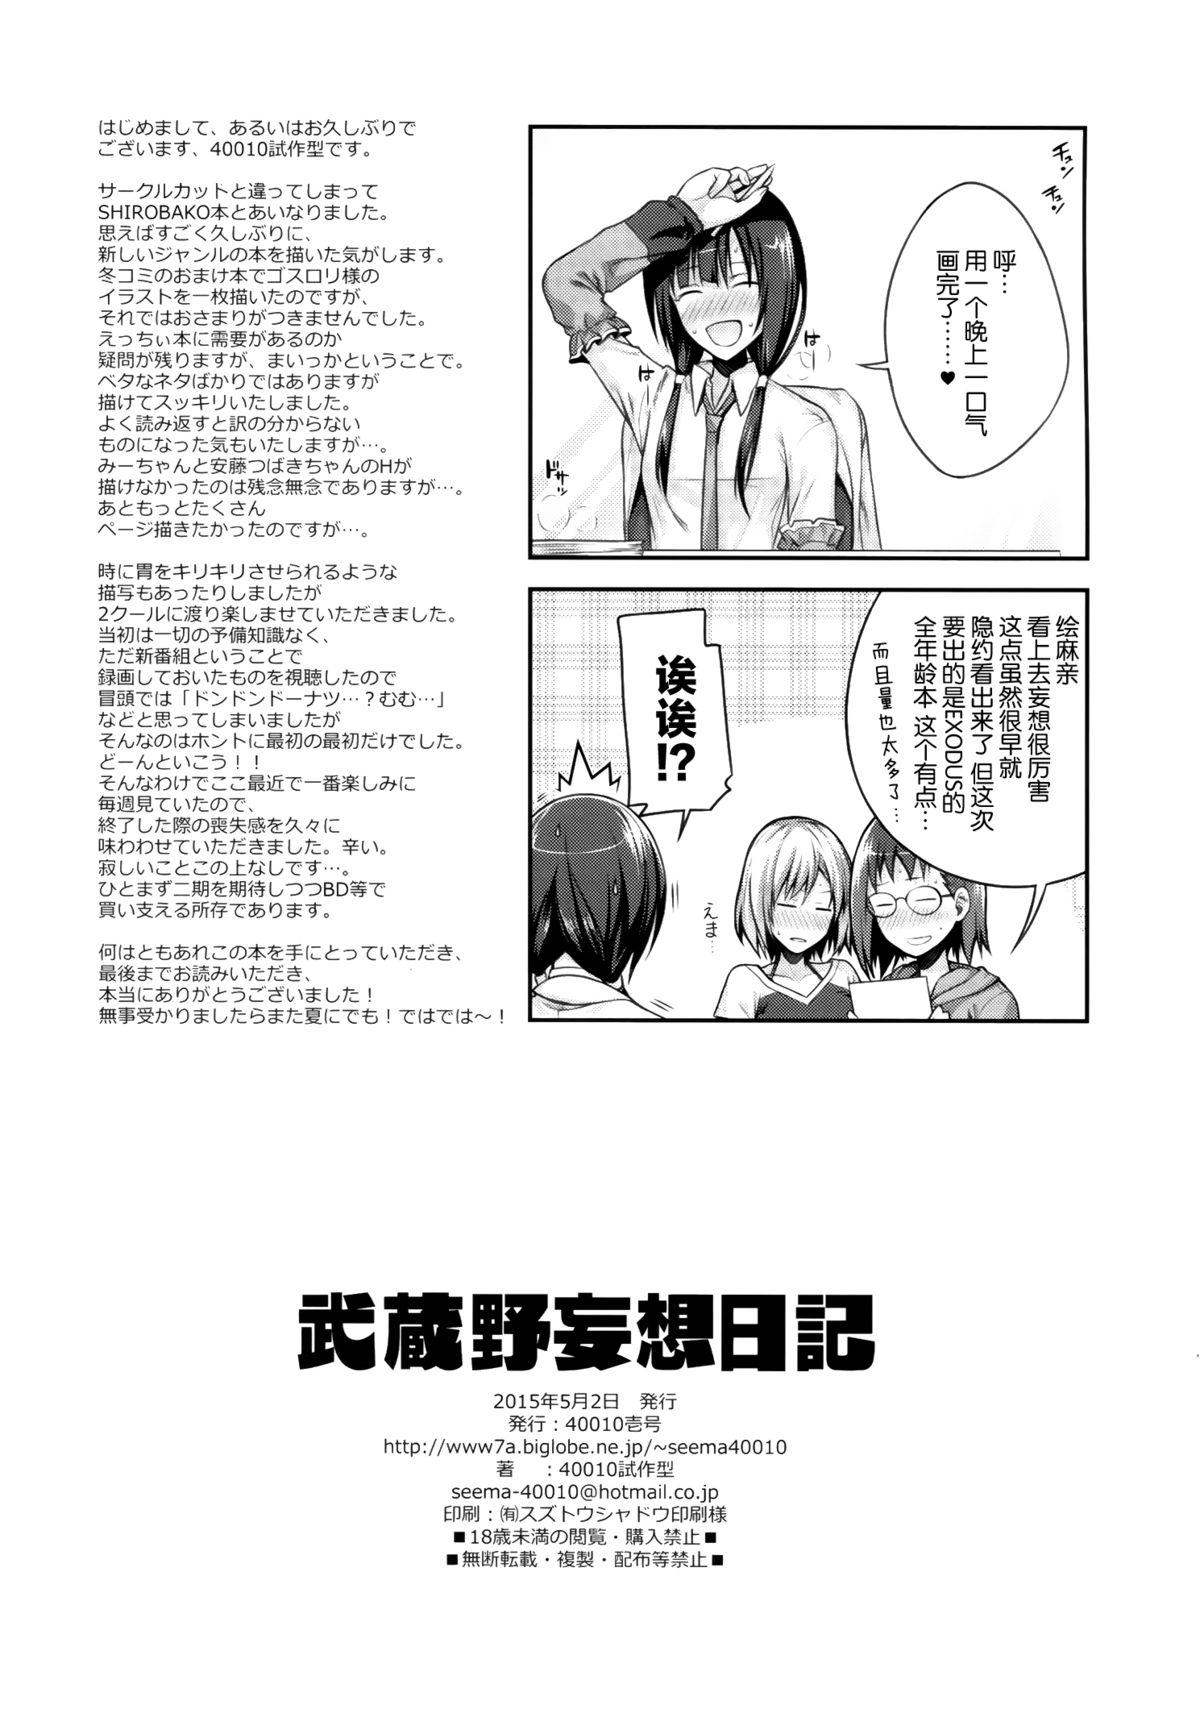 Yanks Featured Musashino Mousou Nikki - Shirobako Gets - Page 22